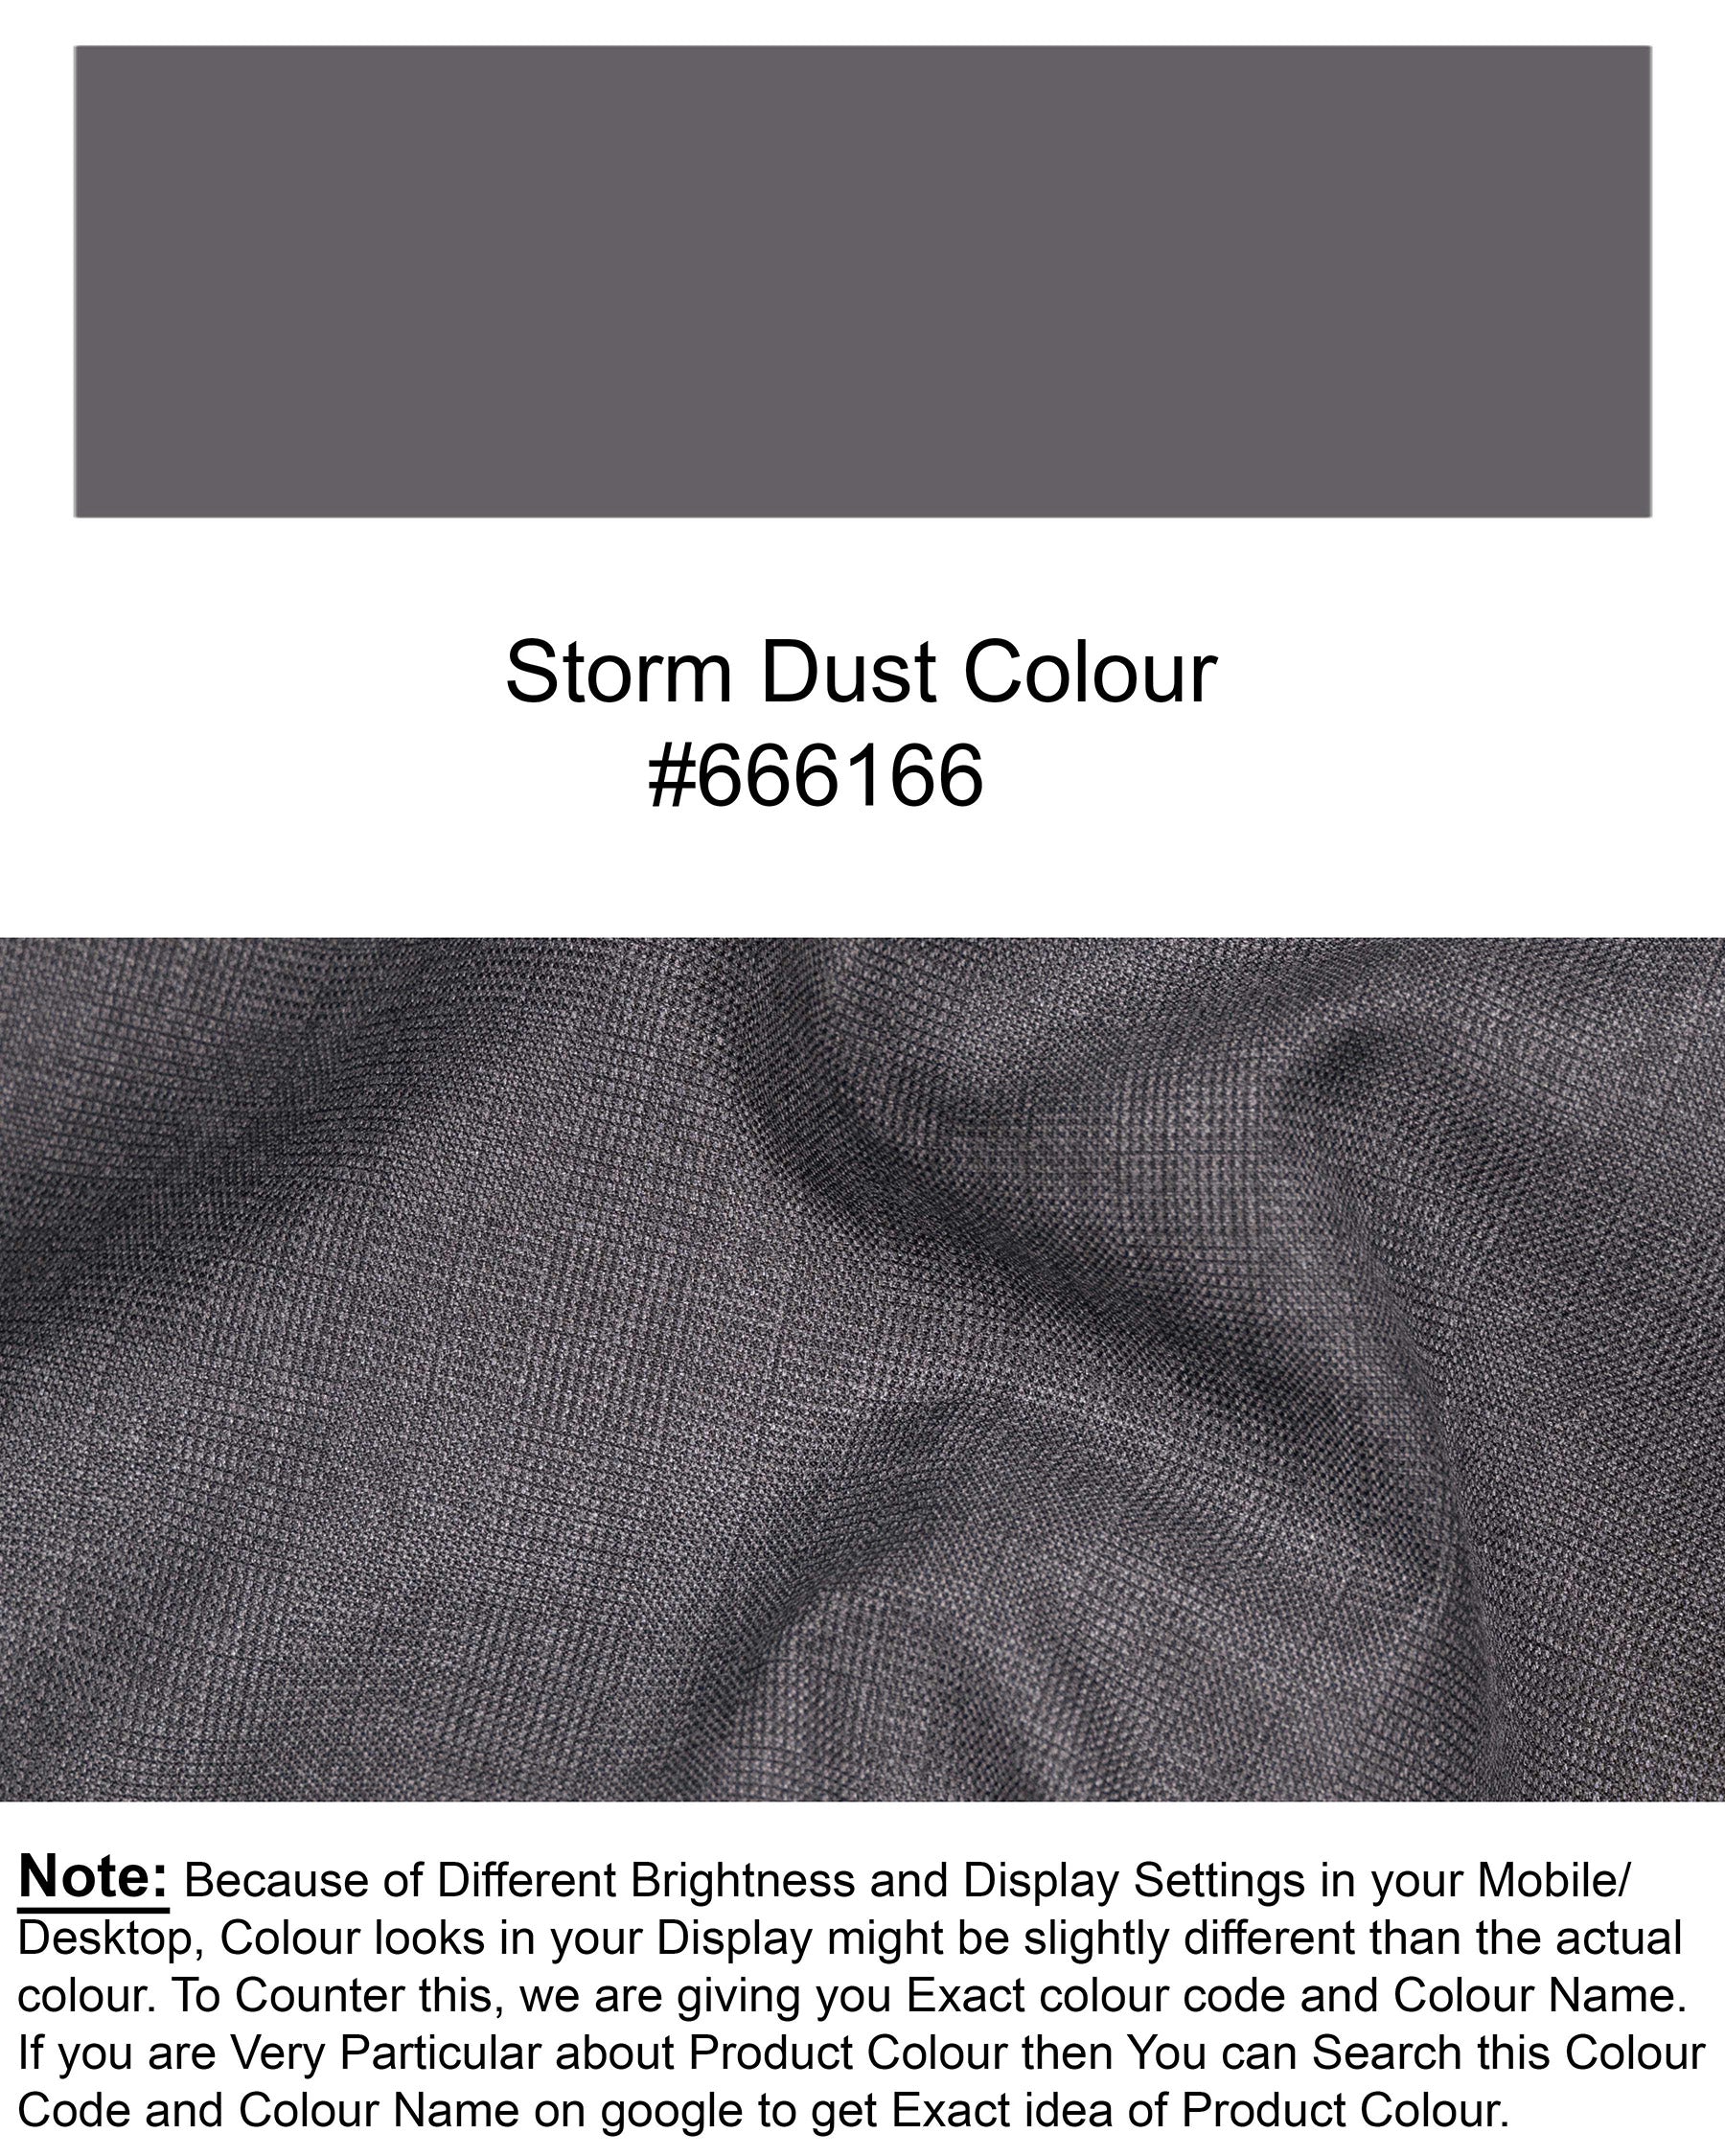 Storm Dust Waistcoat V1834-36, V1834-38, V1834-40, V1834-42, V1834-44, V1834-46, V1834-48, V1834-50, V1834-52, V1834-54, V1834-56, V1834-58, V1834-60